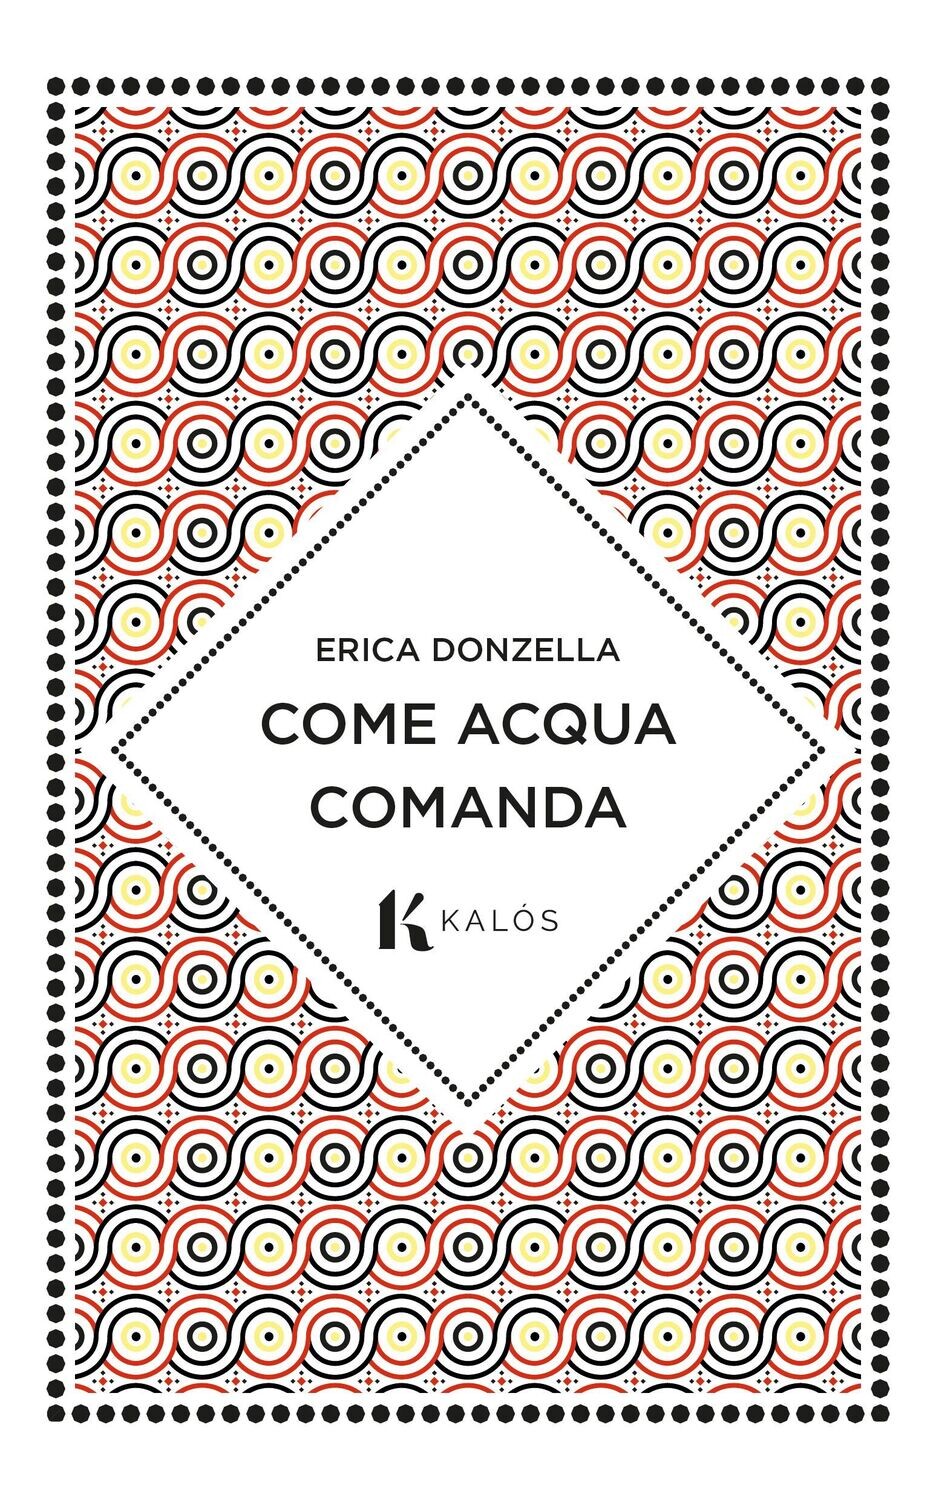 Clicca sulla cover per acquistare il libro di Erica Donzella